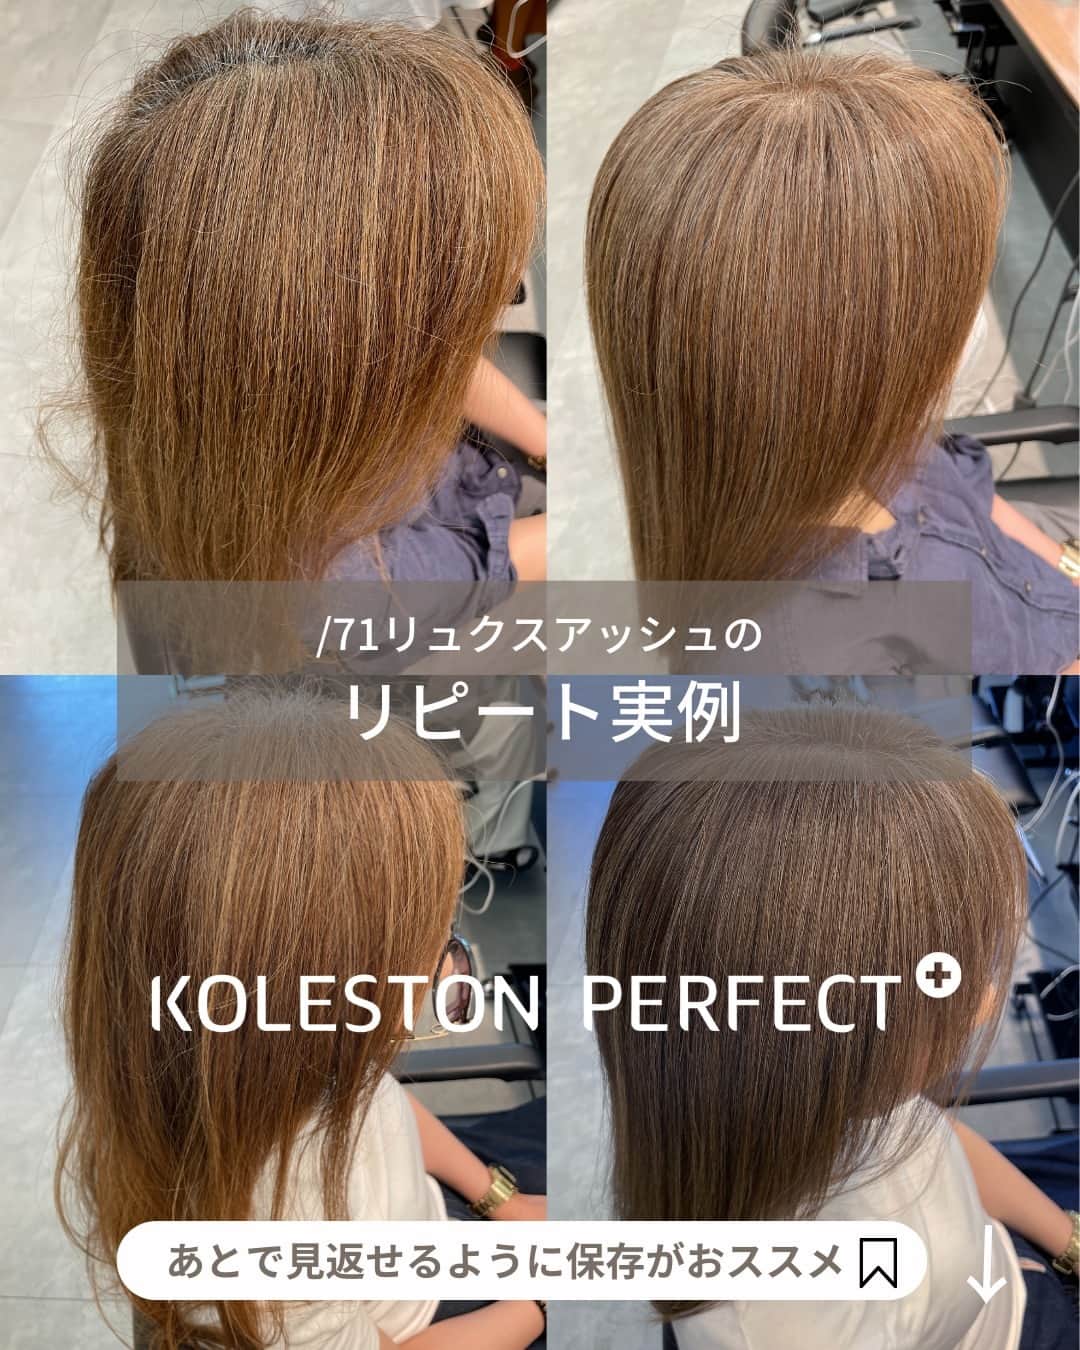 Wella Professionals Japanのインスタグラム：「【コレストン】/71リュクスアッシュのリピート実例 リュクスカラーの中でも/71リュクスアッシュは、ほどよいアッシュ感とベージュ感のバランスが絶妙で万人受けするシェード。褐色を使わない脱白髪染め施術でも白髪へのなじみがちょうどよく移行期にも使いやすい基本のシェードです。 /71を使ったリピートの実例をご紹介します。 ・ <Before> 根元／5Lv 既染部／12Lv 白髪率／70%以上  <Color> 全体／9/71(リュクスアッシュ) 〔ox4.5%〕  /71リュクスアッシュは、アッシュベースのカラーなので見た目はほどよい明るさのベージュに仕上がります。明るく見せたい方で、グレーっぽくしたくない方にちょうどいいシェードです。  ・  ■約1カ月後■ 嫌な黄みや残留もなく、色相の調和がとれた状態でキレイに褪色。 今回は根元の新生部にアプローチしながら全体を繋げます。  <Before> 根元／5Lv 既染部／16Lv 白髪率／70%以上  <Color> 全体／9/71(リュクスアッシュ) 〔ox6%〕  施術1ヶ月後なら根元のリタッチでもかなり綺麗に繋がります。 根元を暗く染めすぎないのがポイント。黒髪を明るくしつつ白髪もある程度染めながら、既染部とも自然に馴染むところがリュクスシリーズの良さです。  by龍 正也さん(ABBEY) @abbey_ryuseiya ・ リュクスカラーの魅力は、KOLESTON WORKSで解説しています。 リュクスカラーの全てがわかる?! 「WorkBook」も無料配布中♡ ぜひチェックしてみてくださいね♪  https://koleston.wella.co.jp/works/posts/overview-luxecolorcollection/  ・ #コレストン #新色 #リュクスカラーコレクション #71リュクスアッシュ #脱白髪染め #白髪活かし #白髪ぼかし #大人髪  #ウエラ  #ウエラカラー #ヘアカラー  #サロンカラー #美容室 #美容師  #いまコレ #コレストンワークス  #脱白髪染めラボ」